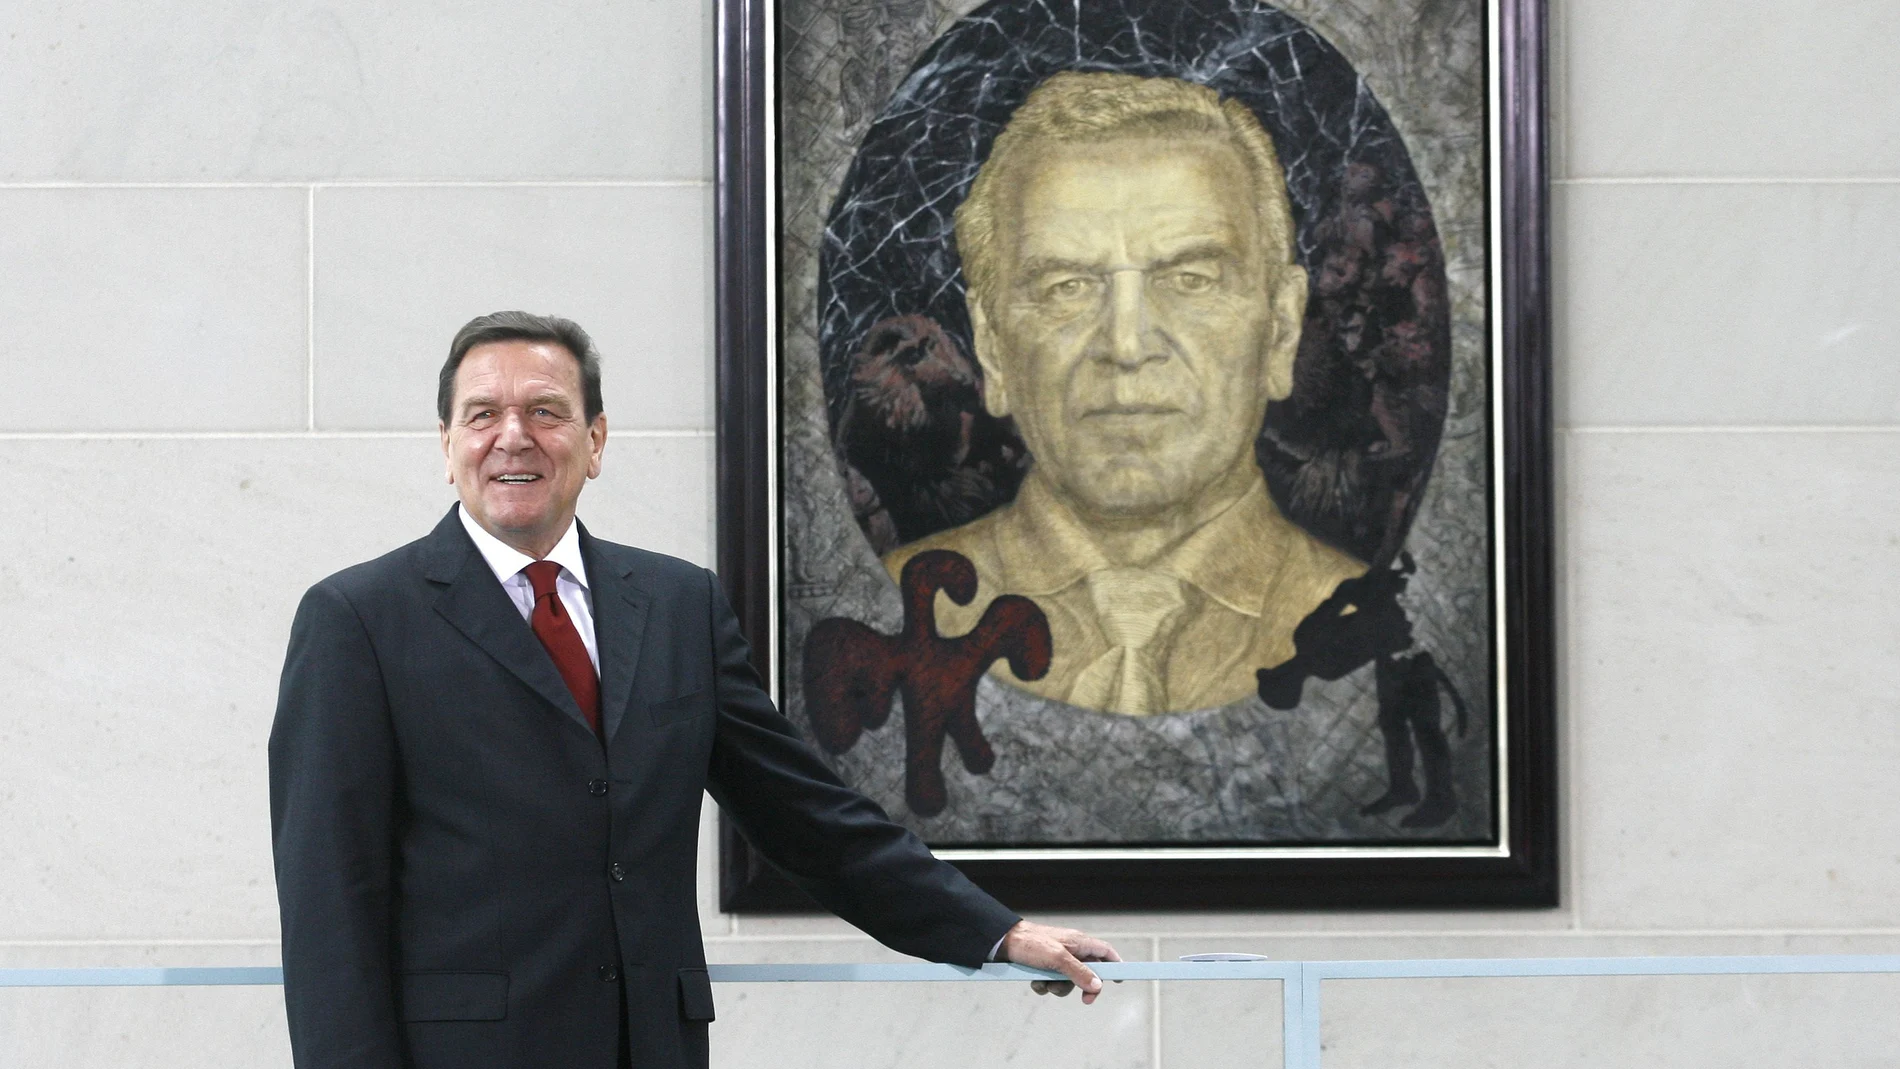 El ex canciller alemán Gerhard Schroeder posa delante de un cuadro del artista alemán Joerg Immendorff en la cancillería de Berlín el martes 10 de julio de 2007